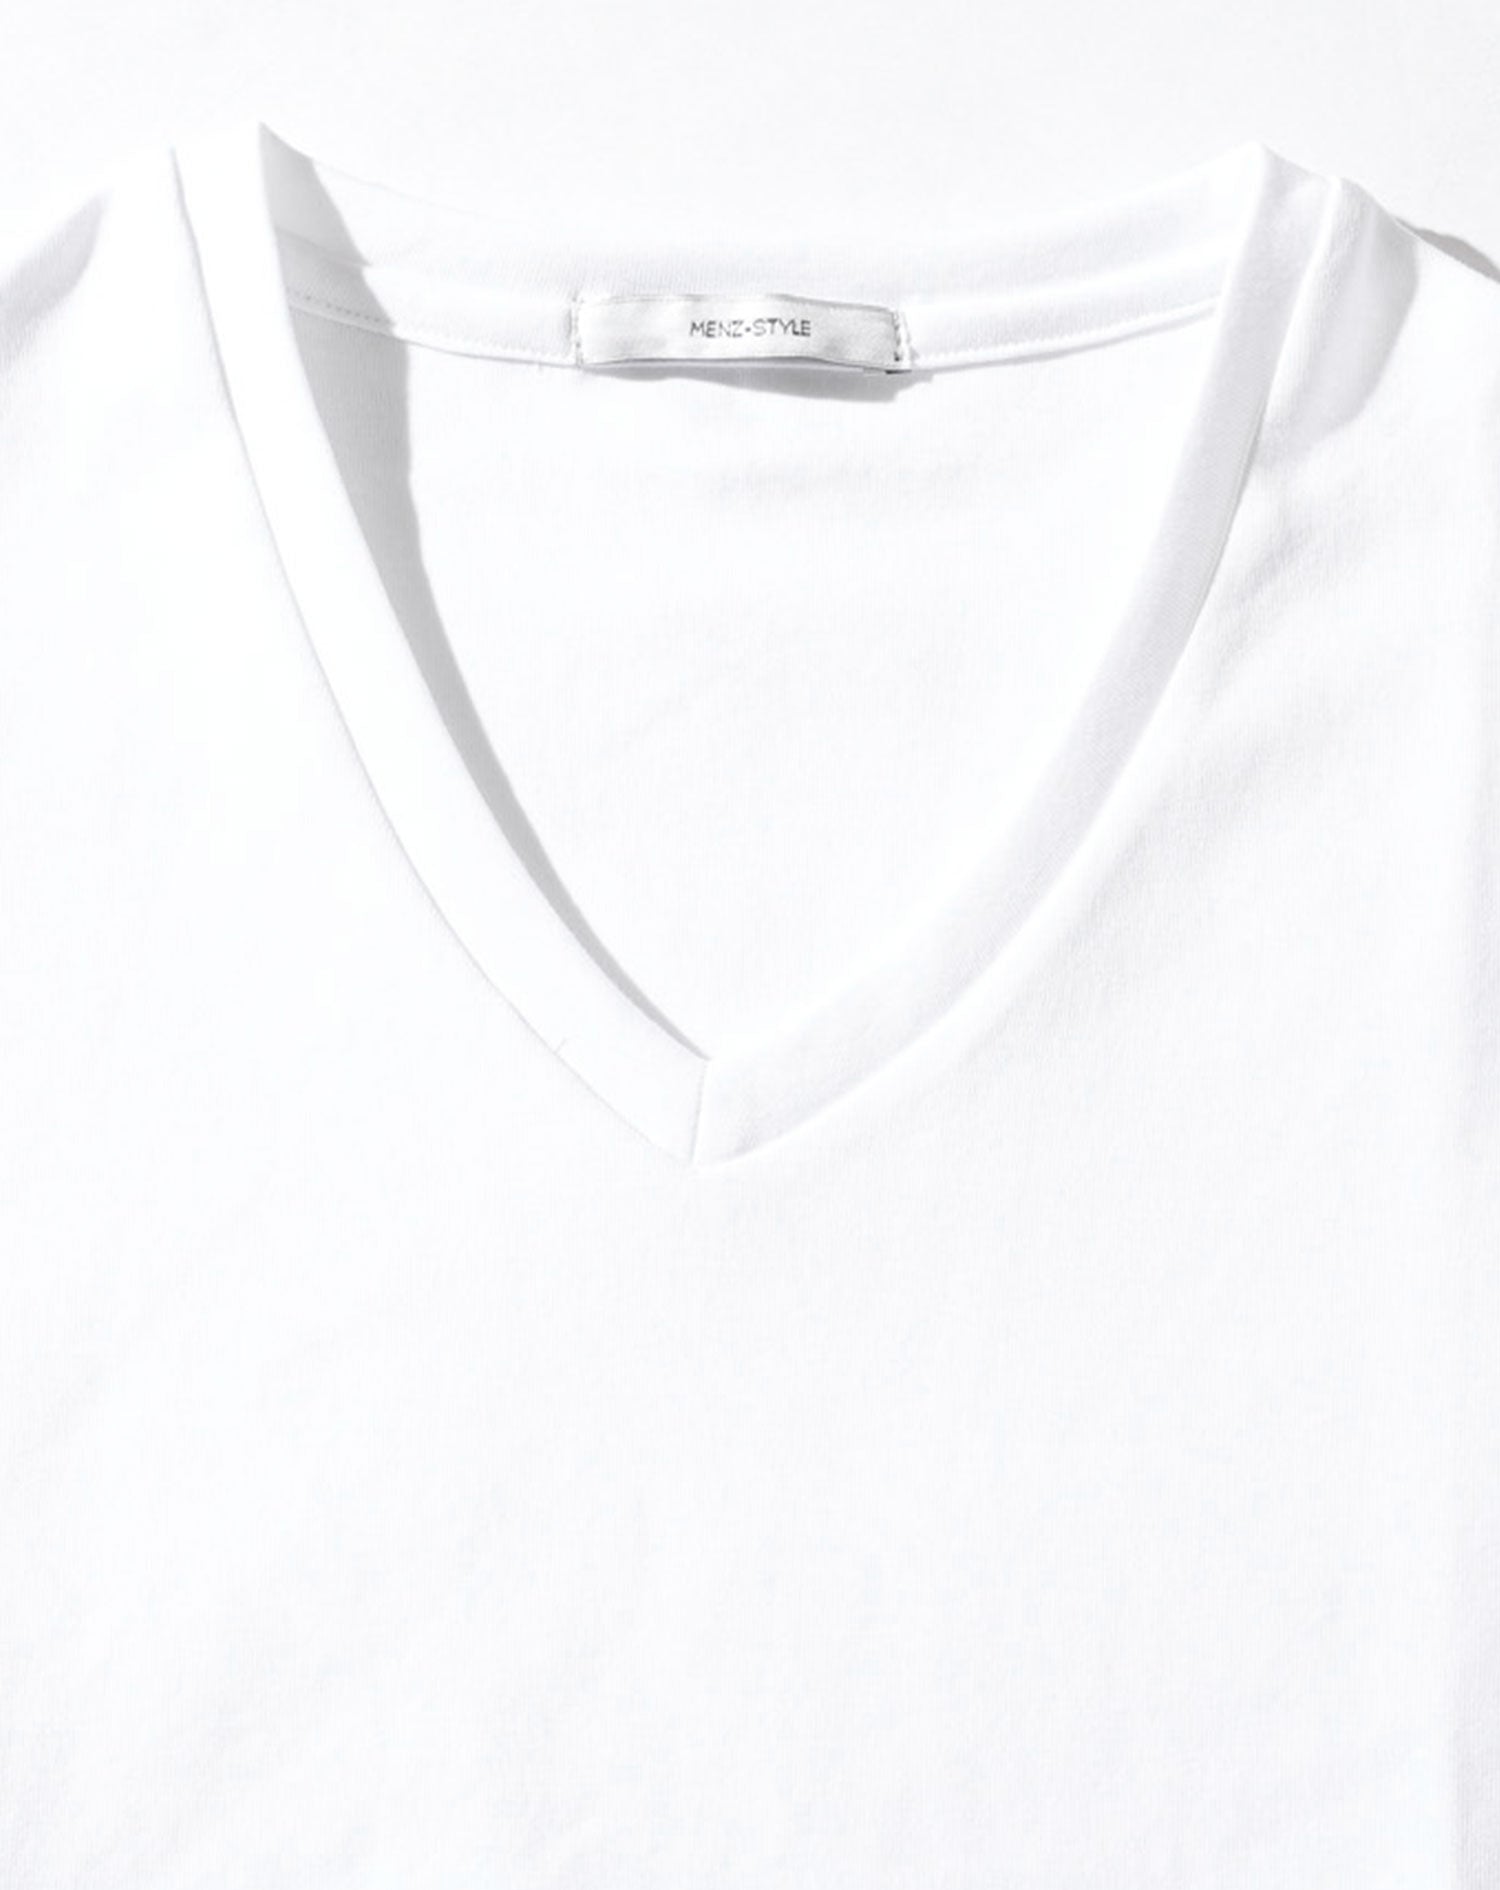 Tシャツ カットソー メンズ 半袖 vネック おしゃれ ブランド 人気 おすすめ 無地 コーデ 40代 50代 厚手 スリム 細身 インナー 透けない ストレッチ 大きいサイズ